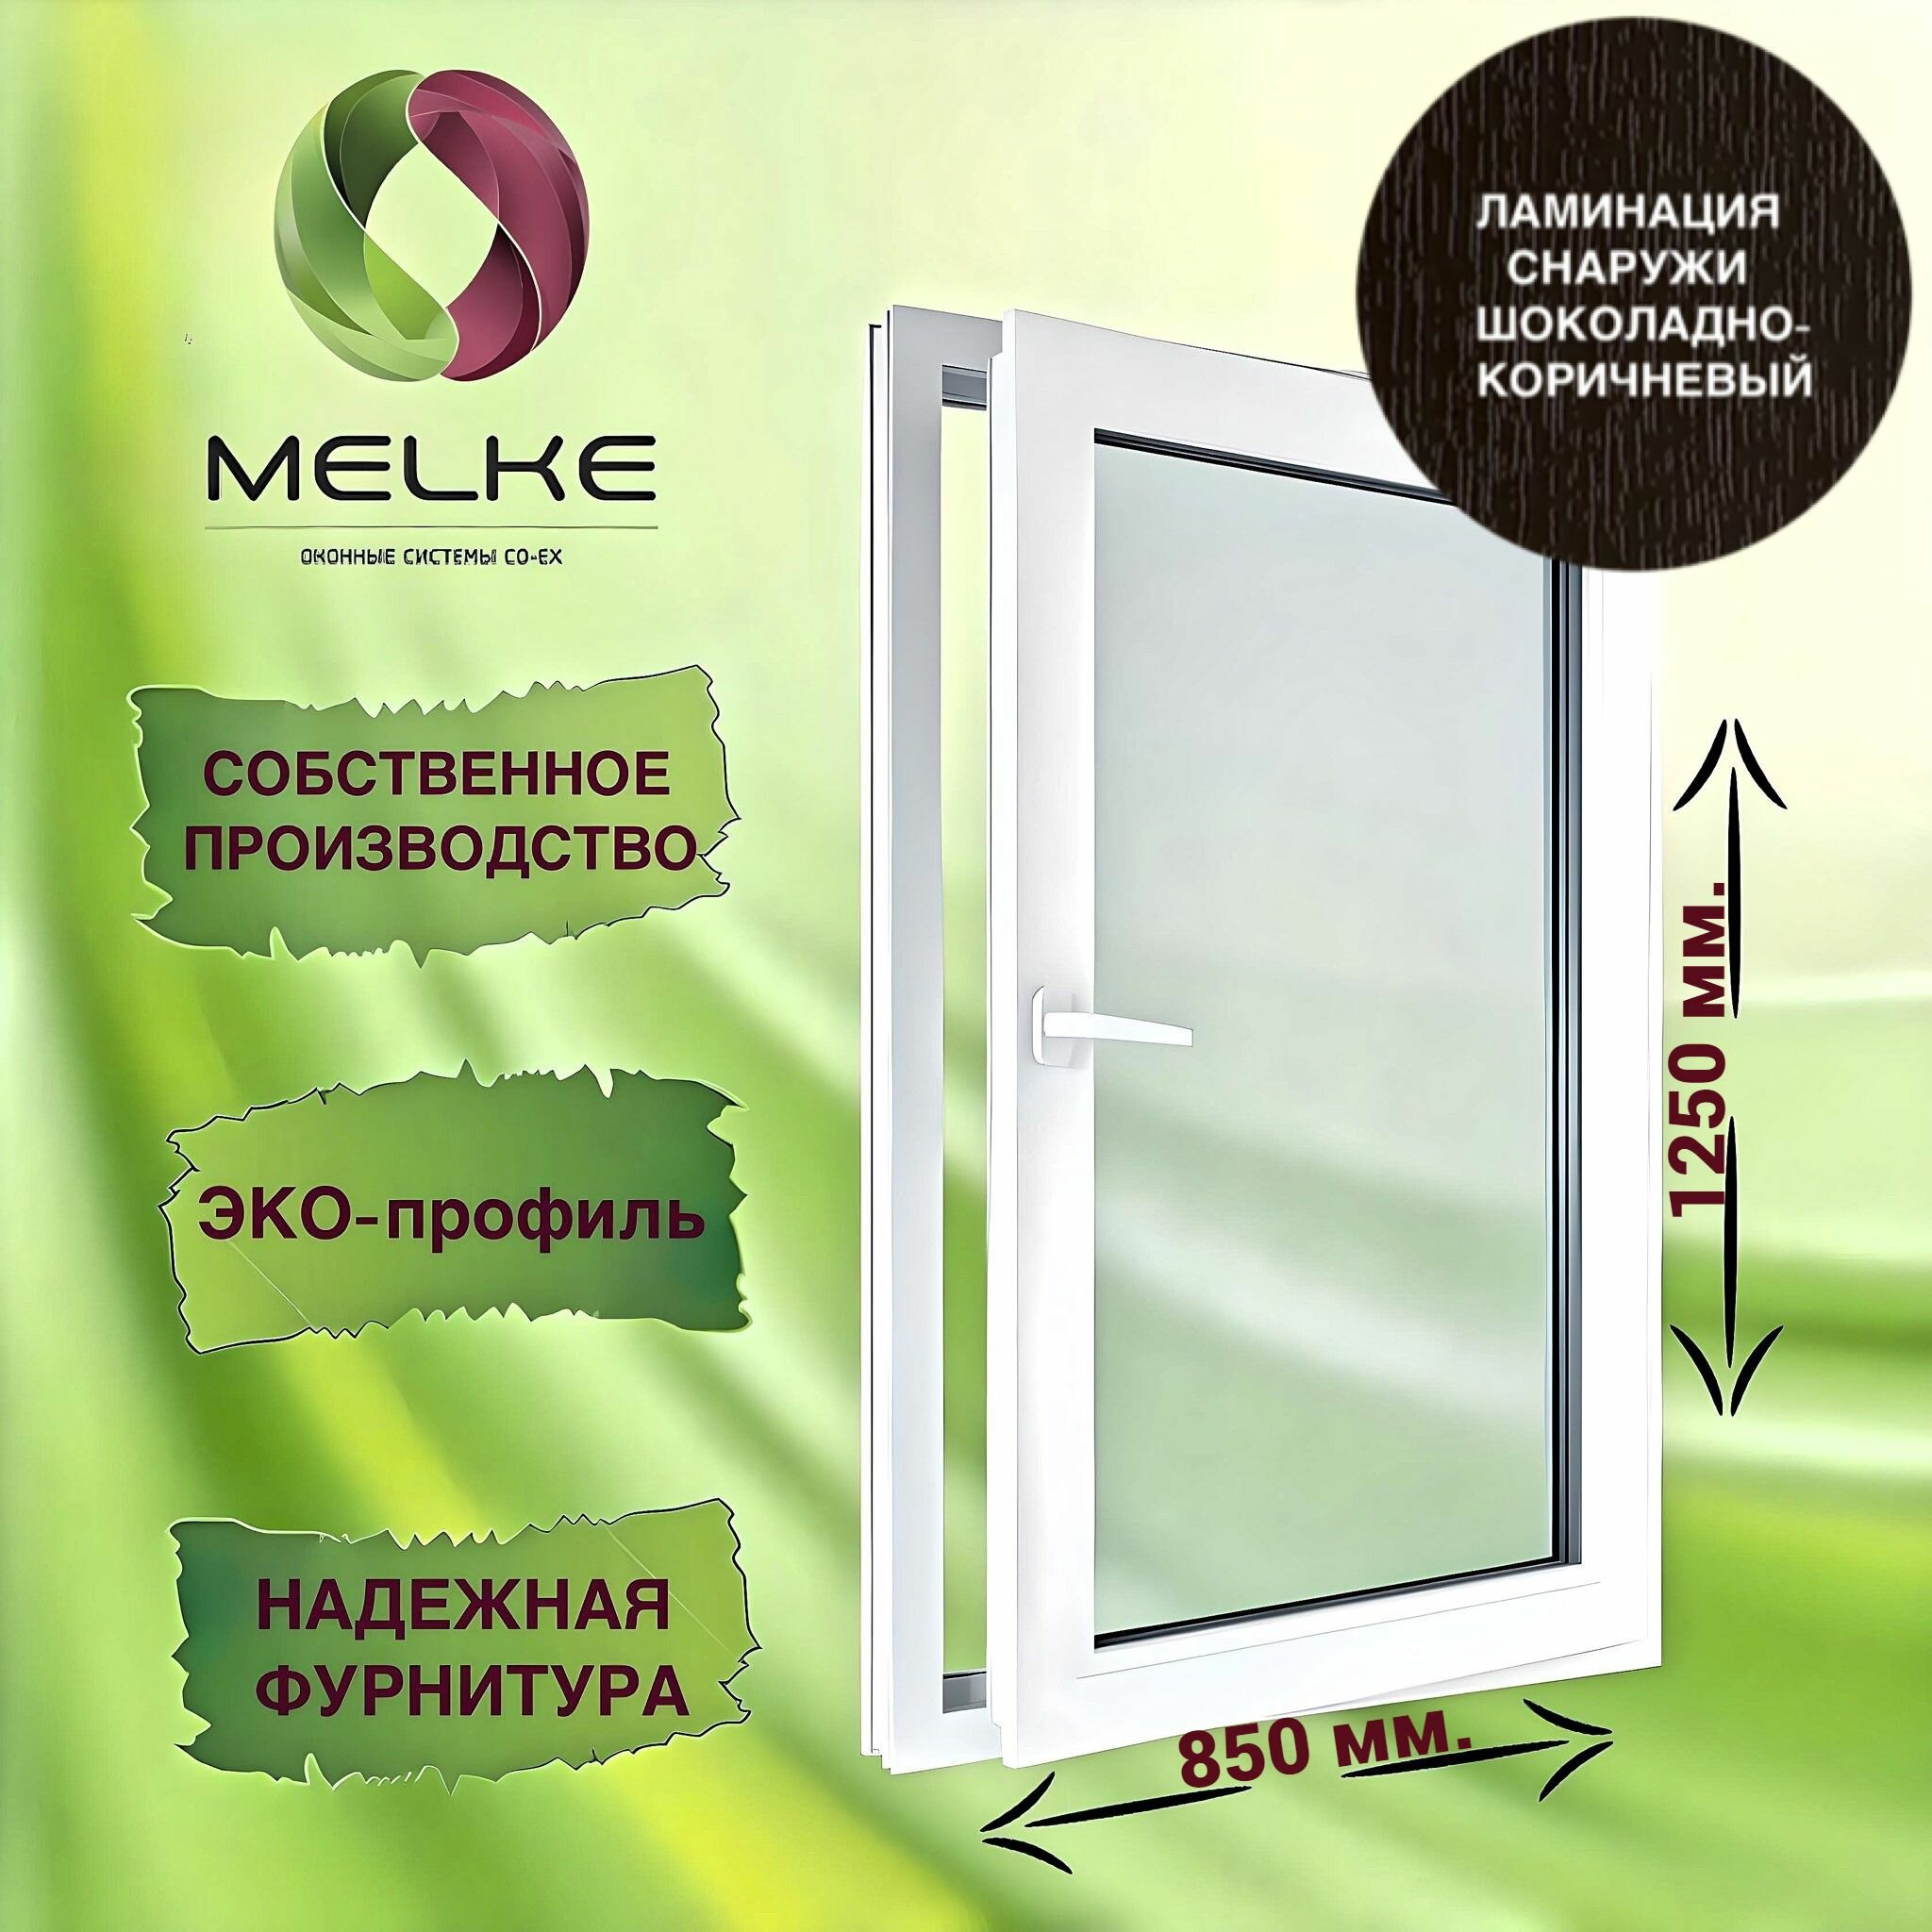 Окно 1250 х 850 мм, Melke 60 (Фурнитура FUTURUSS), правое одностворчатое, поворотно-откидное, цвет внешней ламинации Шоколадно-коричневый, 2-х камерный стеклопакет, 3 стекла